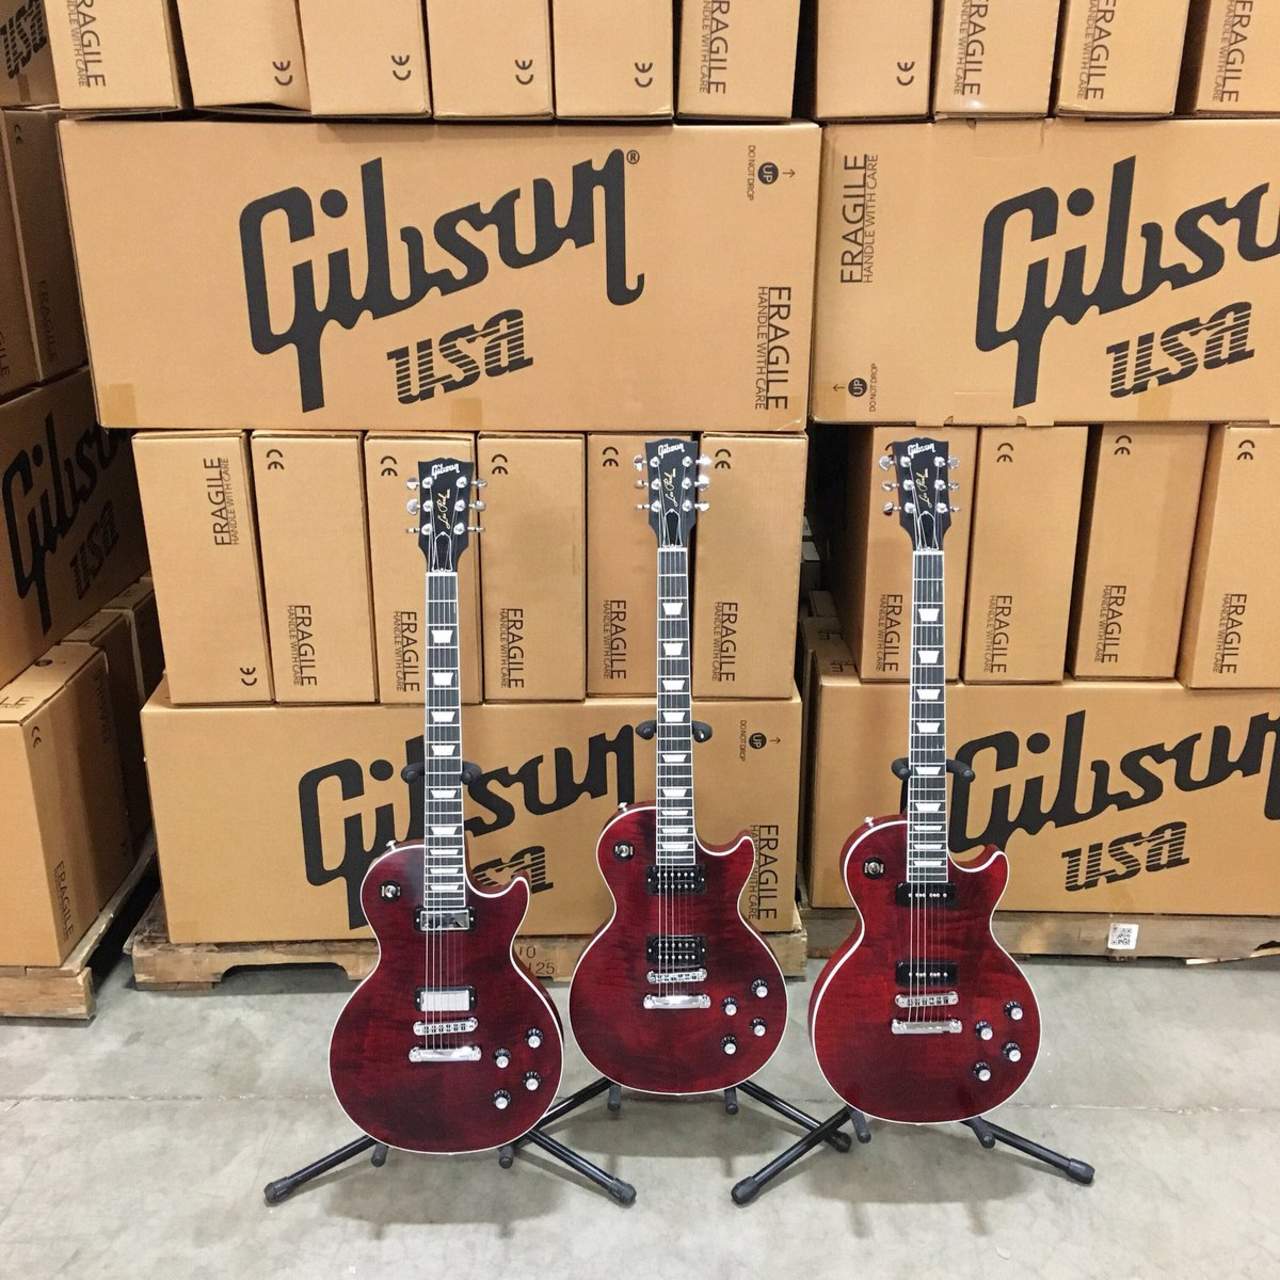 Las guitarras eléctricas Gibson han sido un elemento básico del blues y el rock. (TWITTER)